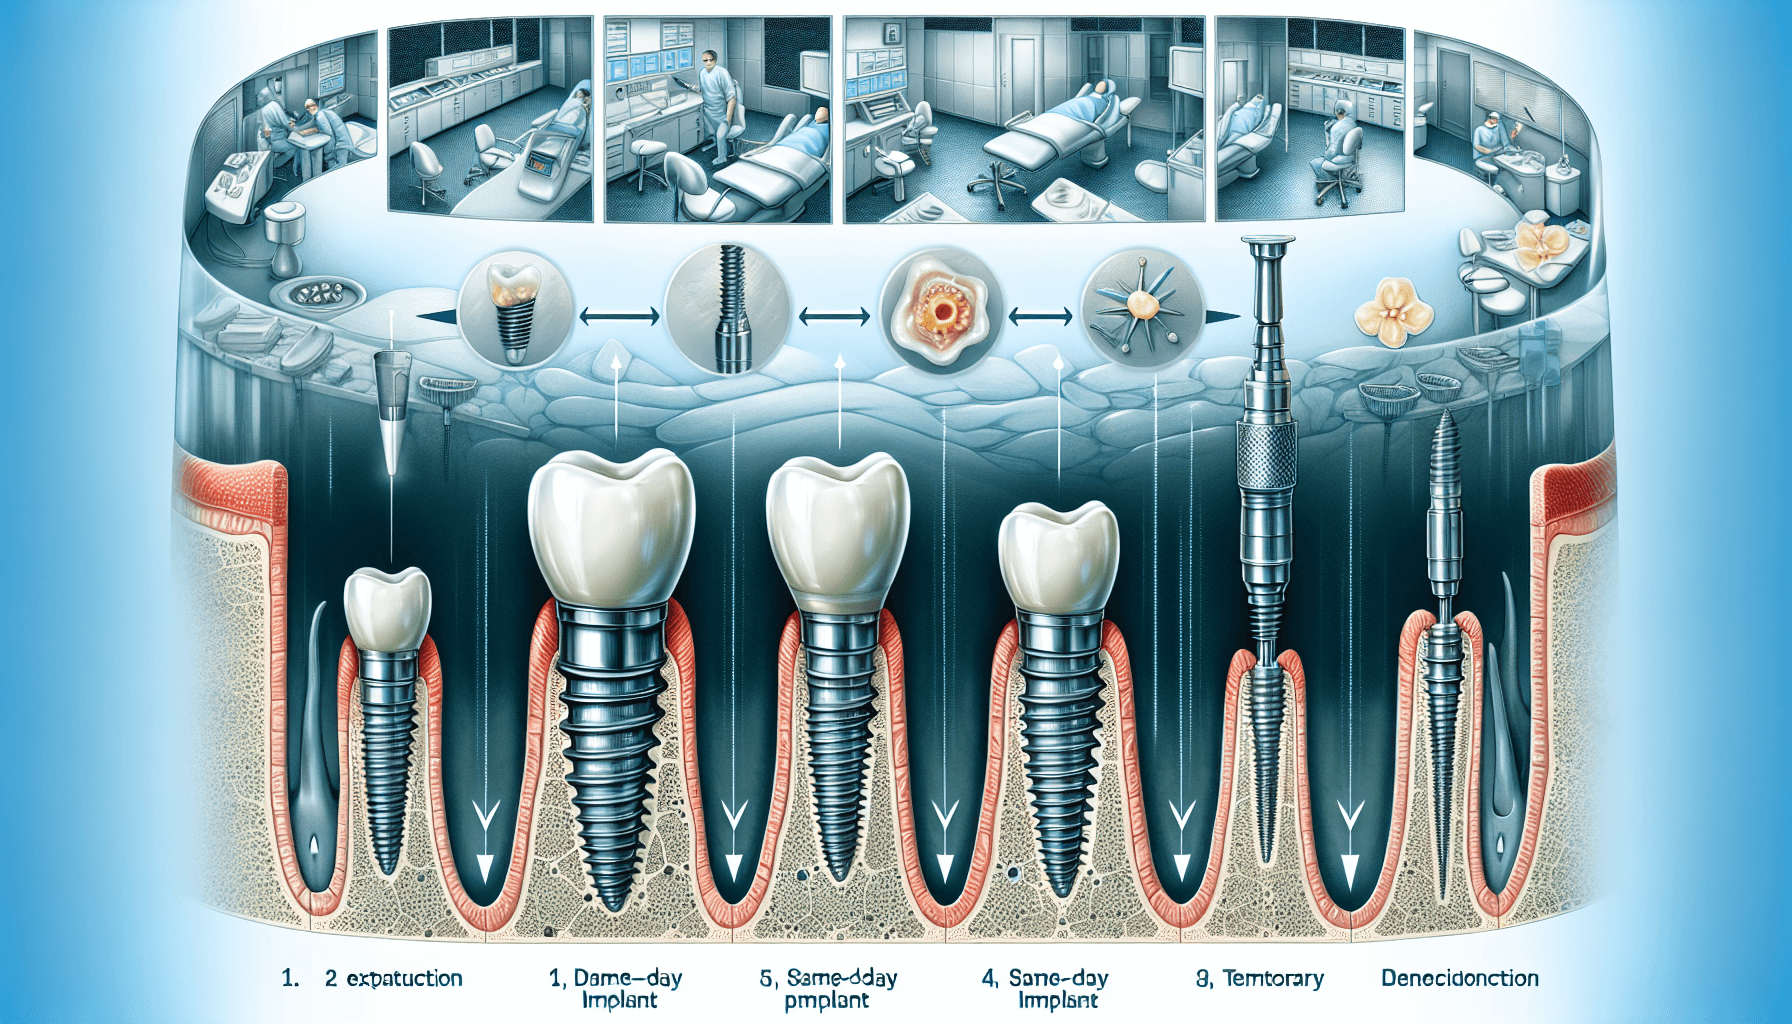 Illustration of same-day implant timeline